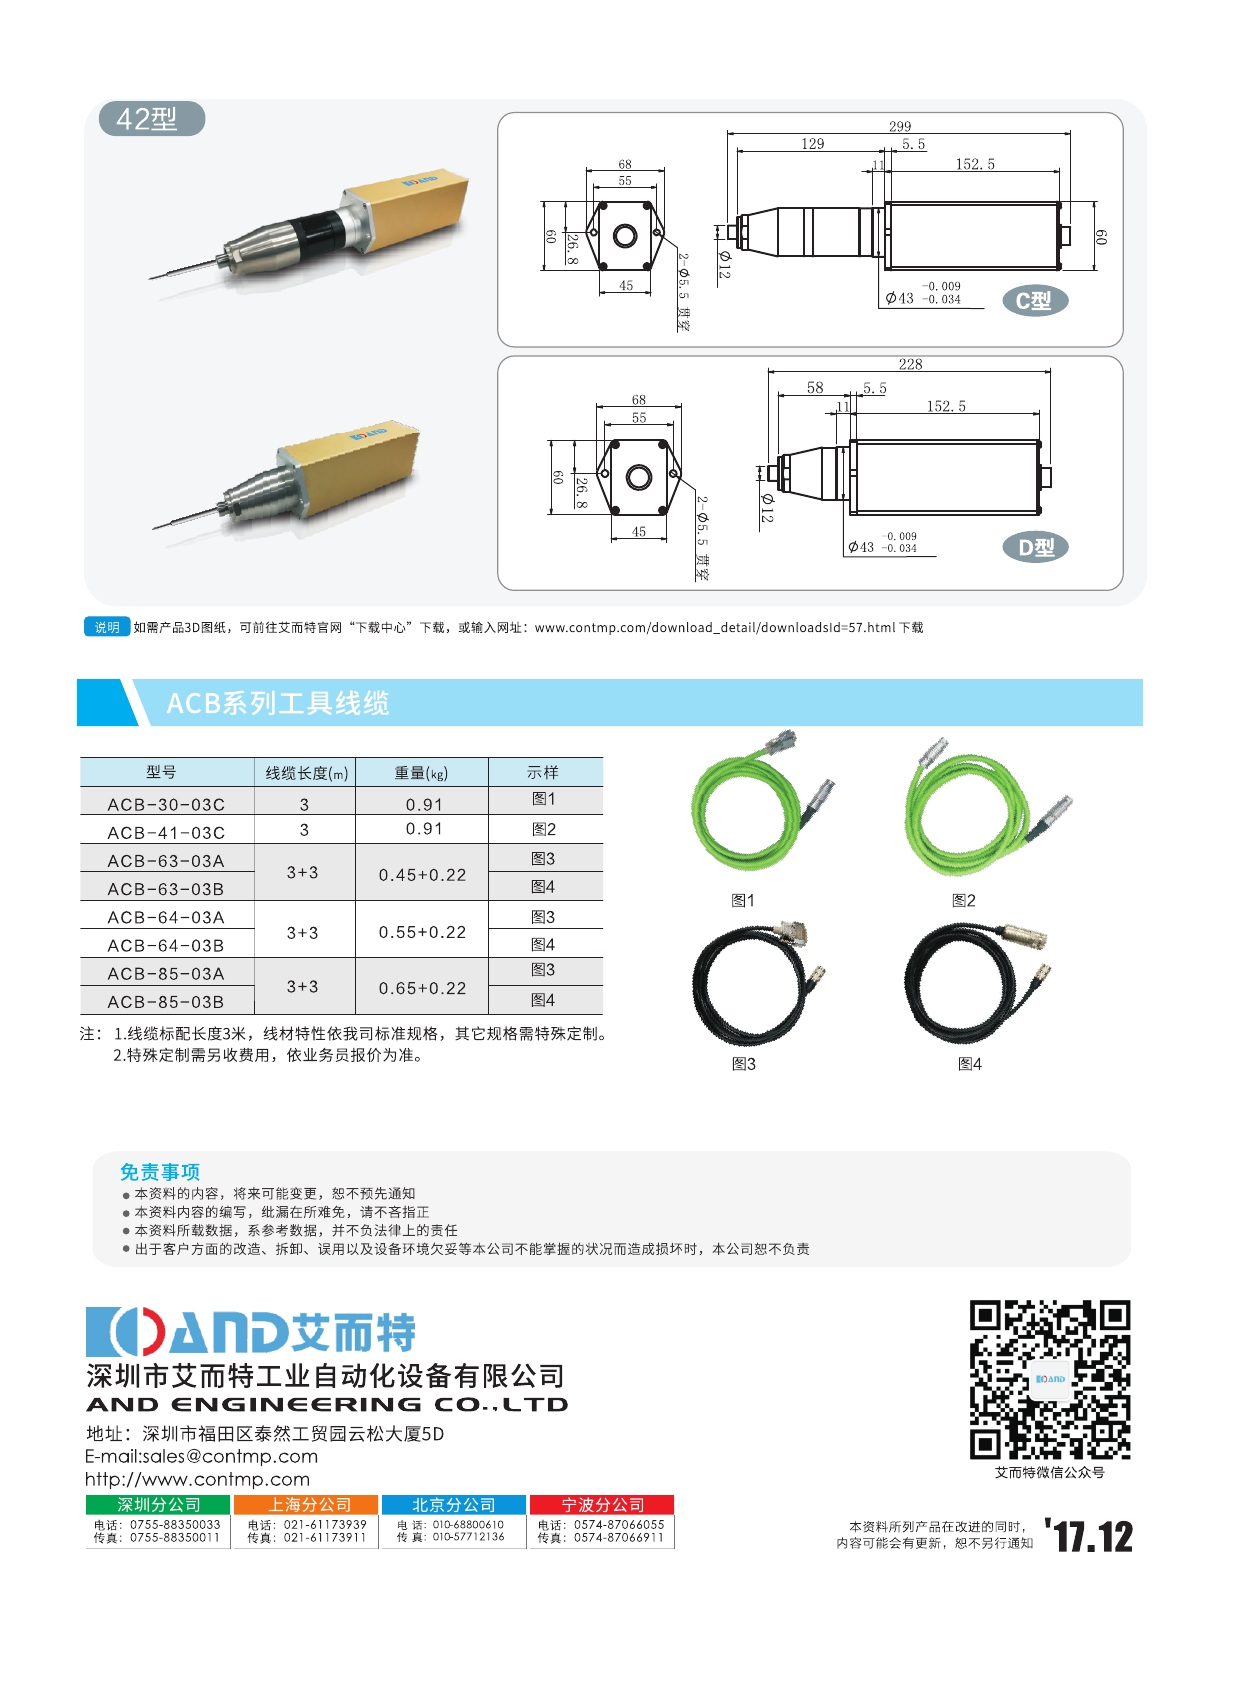 旋转编码器-小型三轴惯性陀螺仪-深圳市艾而特工业自动化设备有限公司